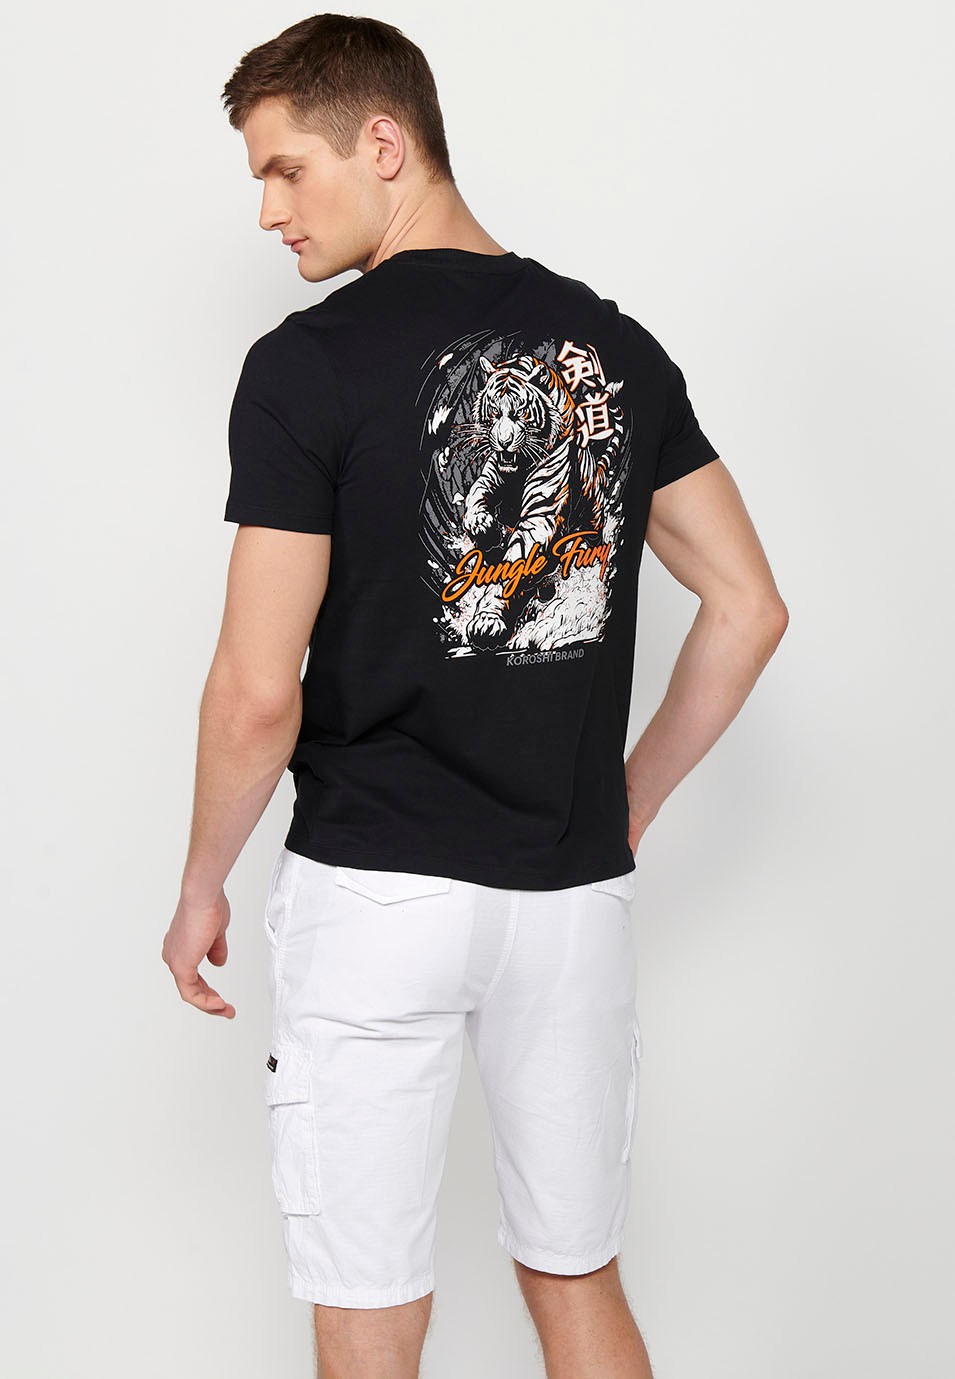 Camiseta de manga corta de algodon y estampado trasero jungle tigger, color negro para hombre